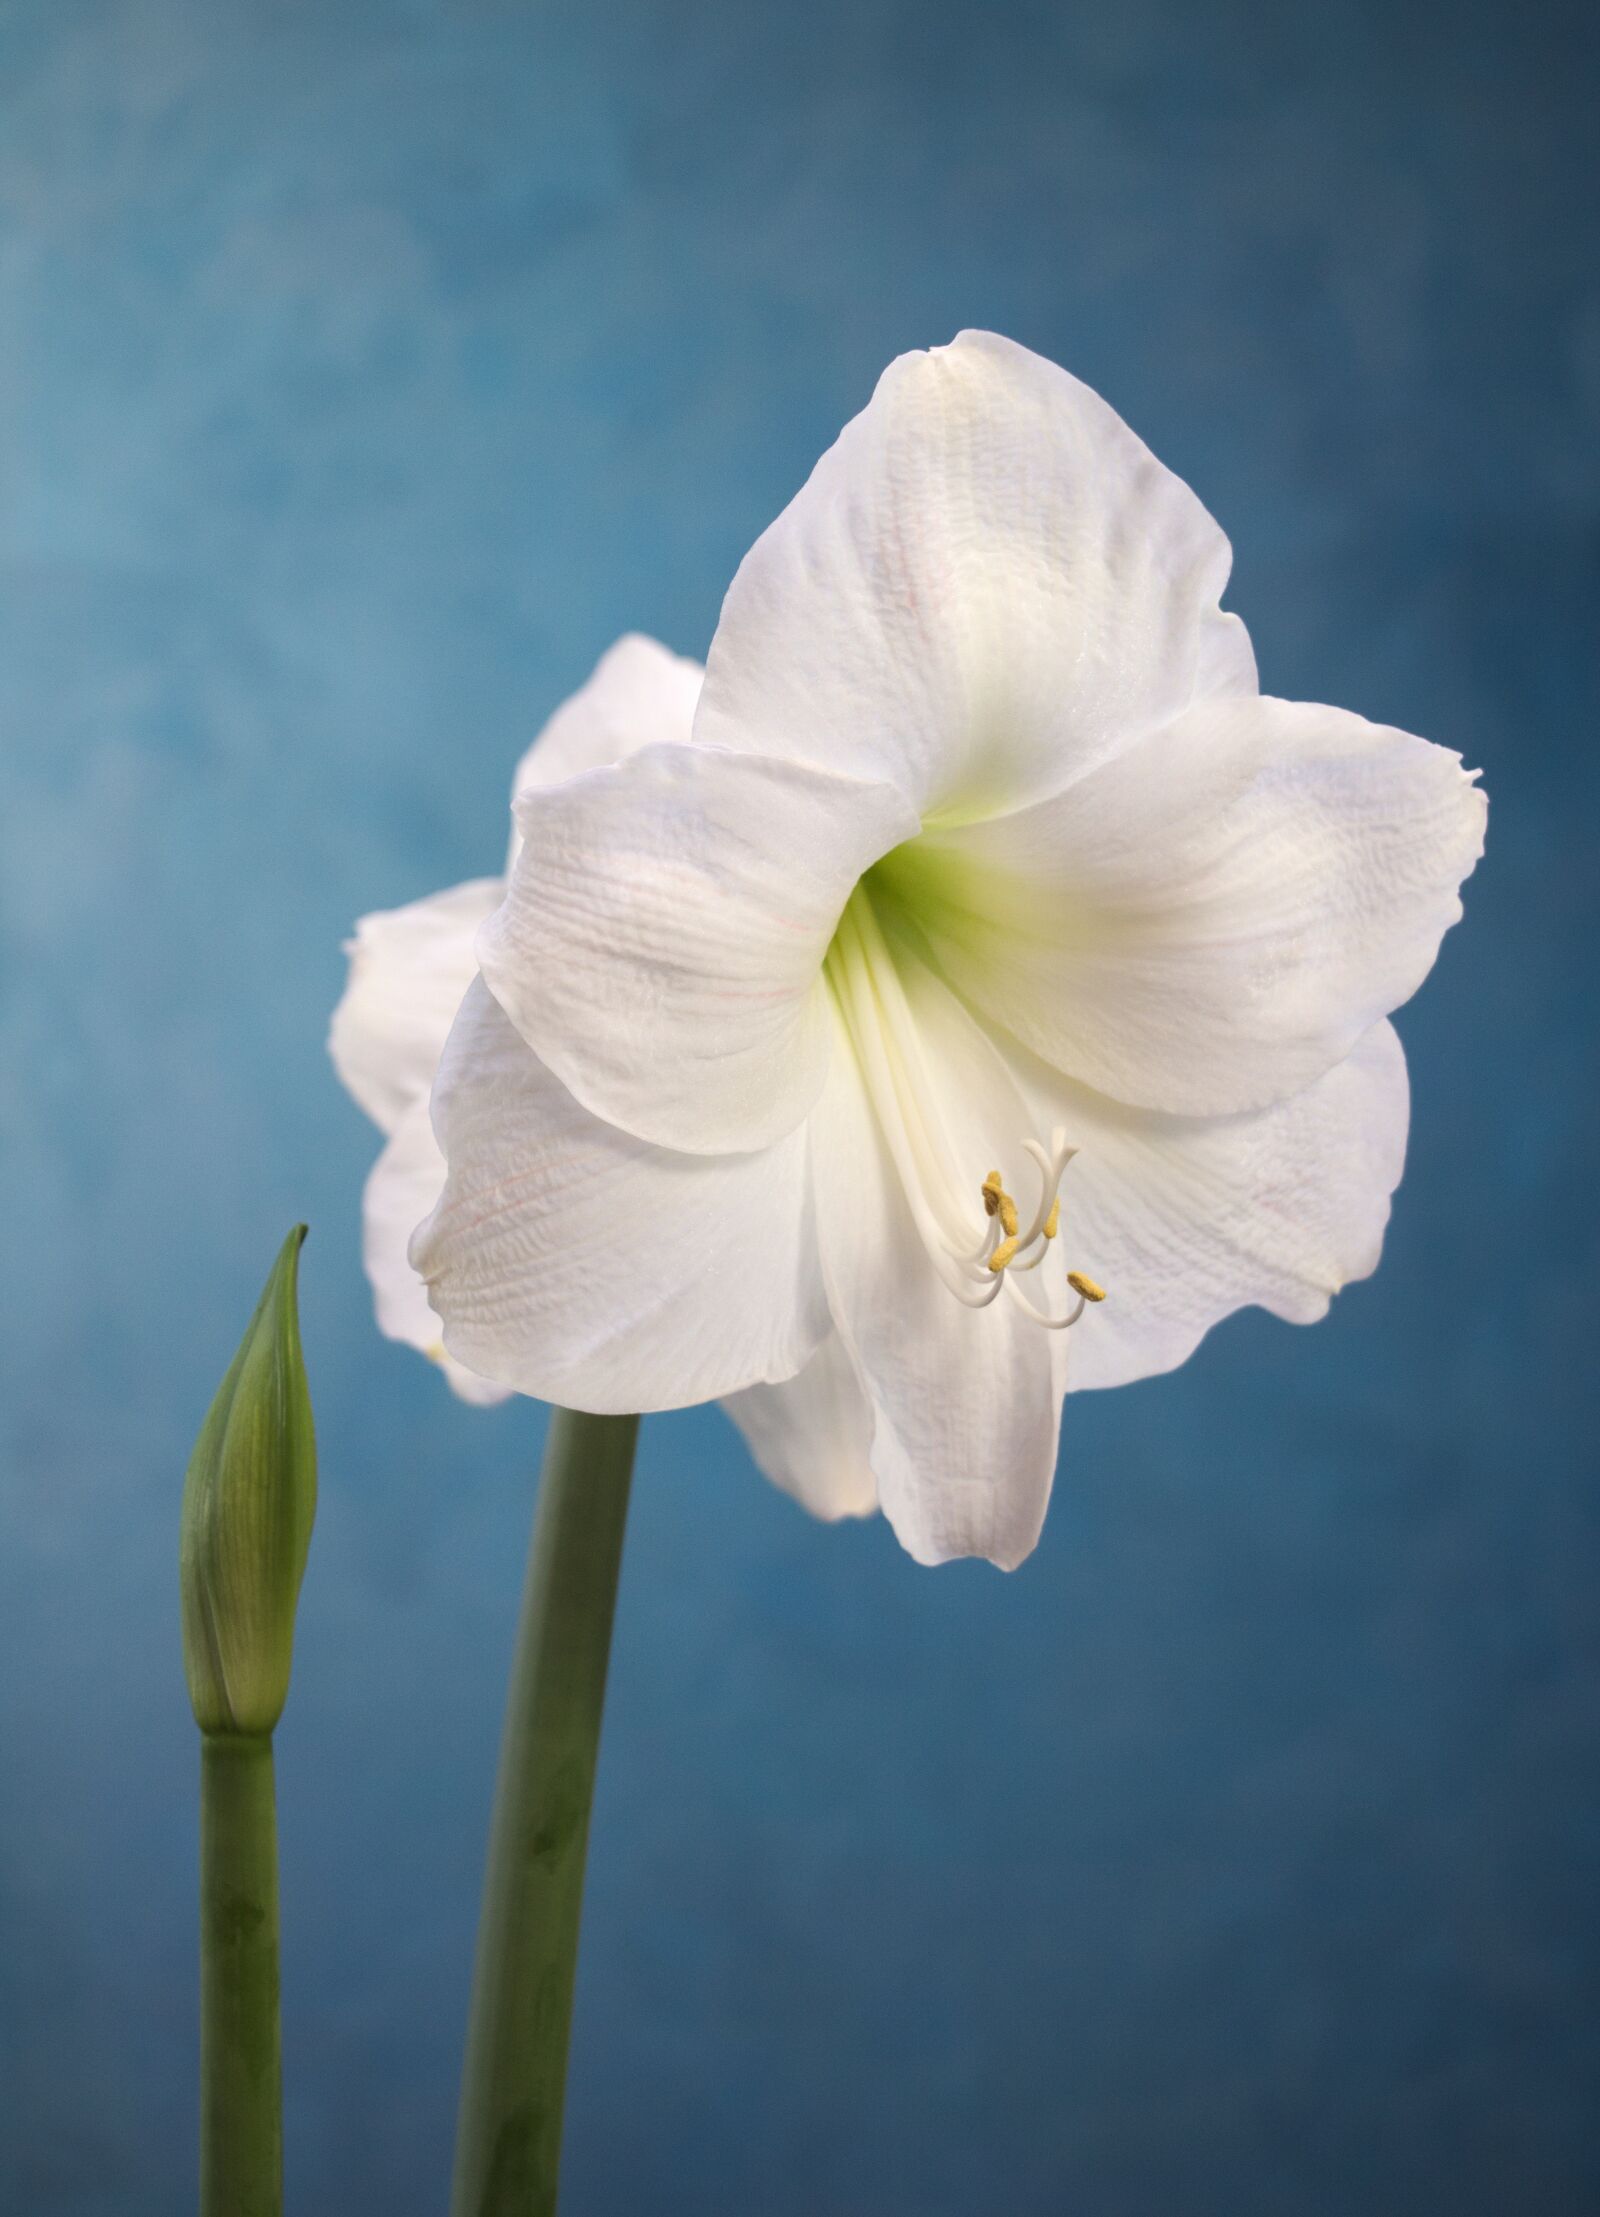 Canon EOS 750D (EOS Rebel T6i / EOS Kiss X8i) sample photo. Amaryllis, white, flower photography